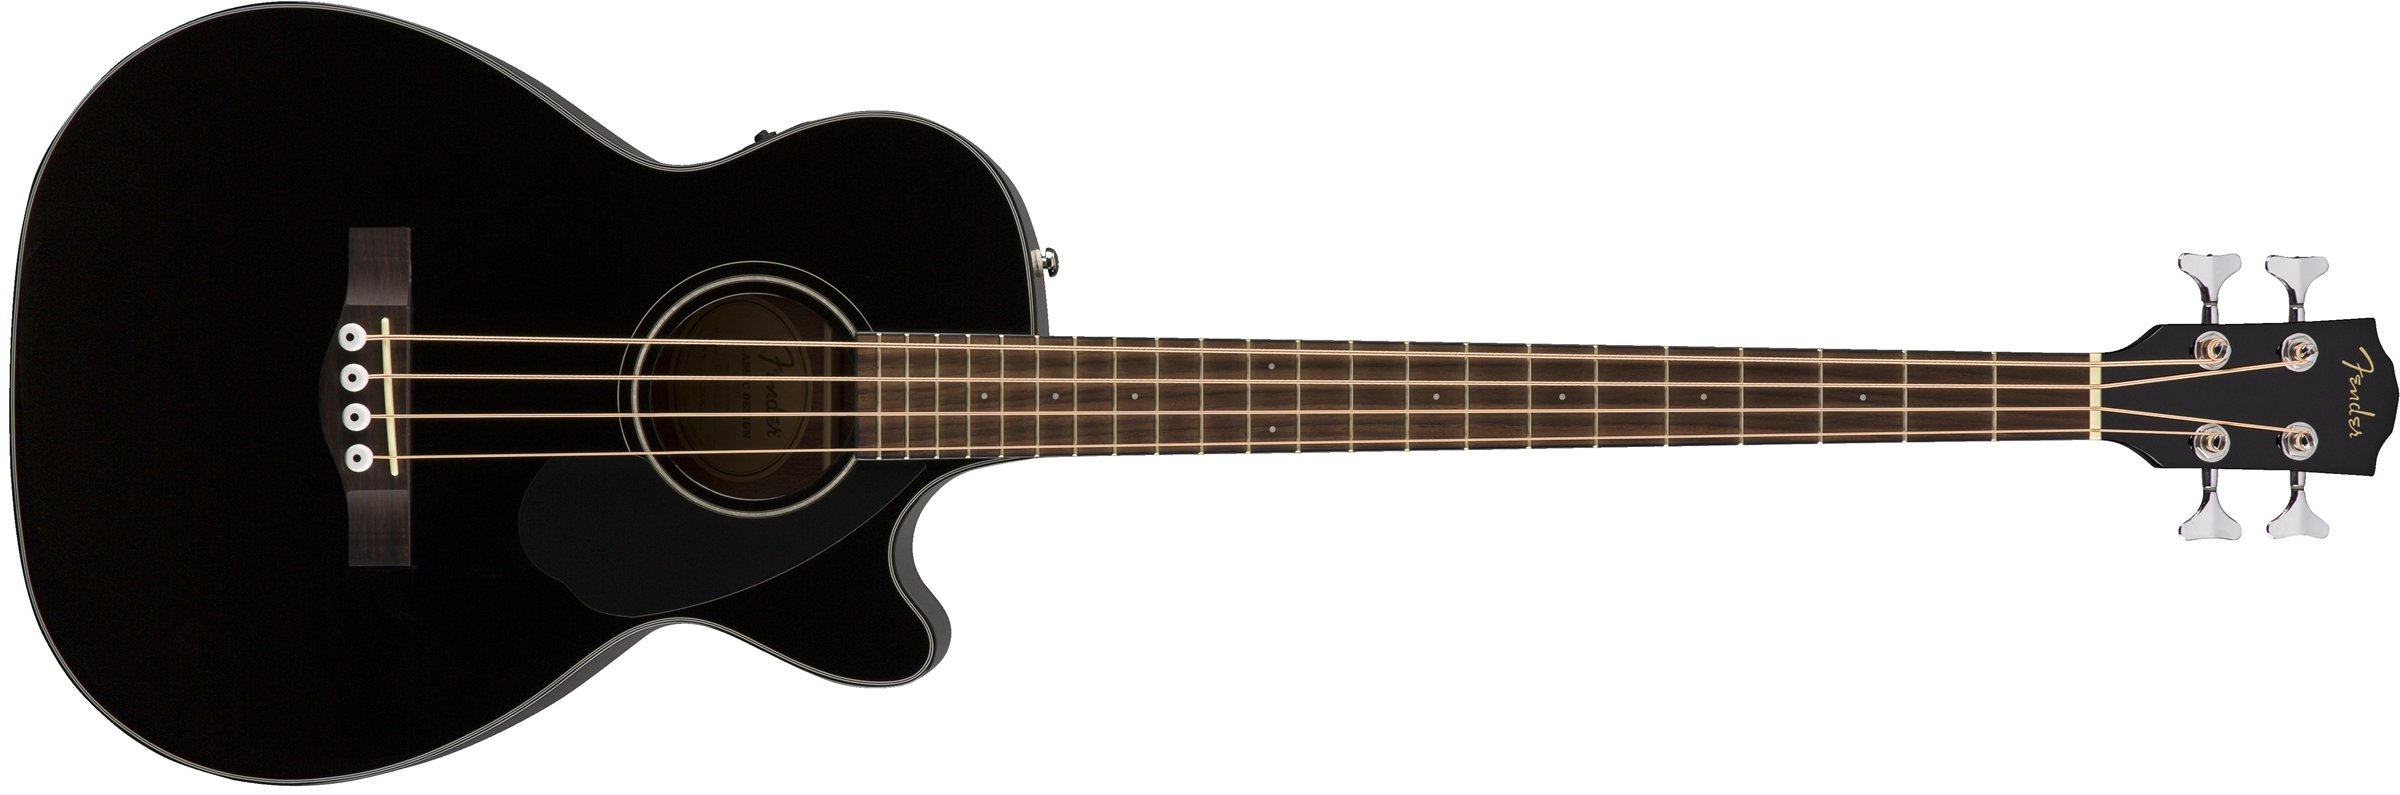 Fender Baixo acústico CB-60SCE - Preto